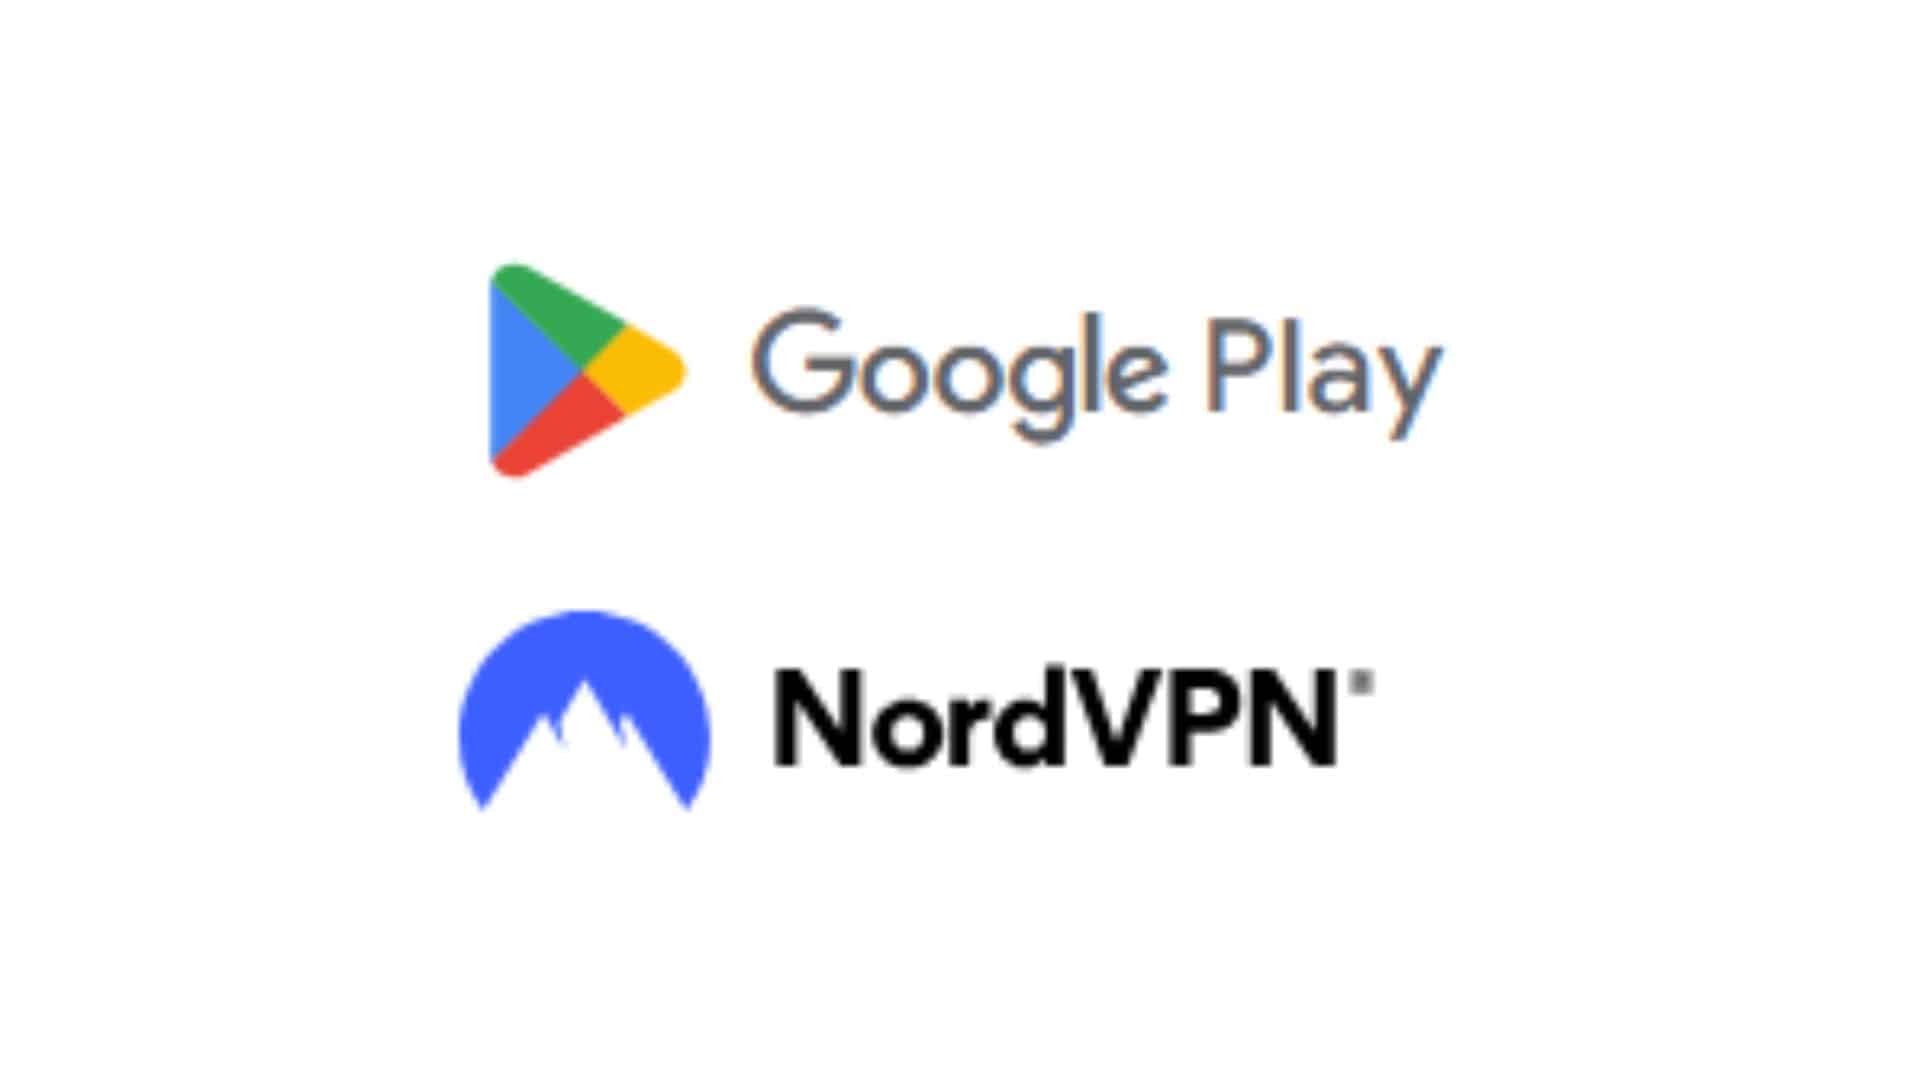 NordVPN – fast VPN for privacy